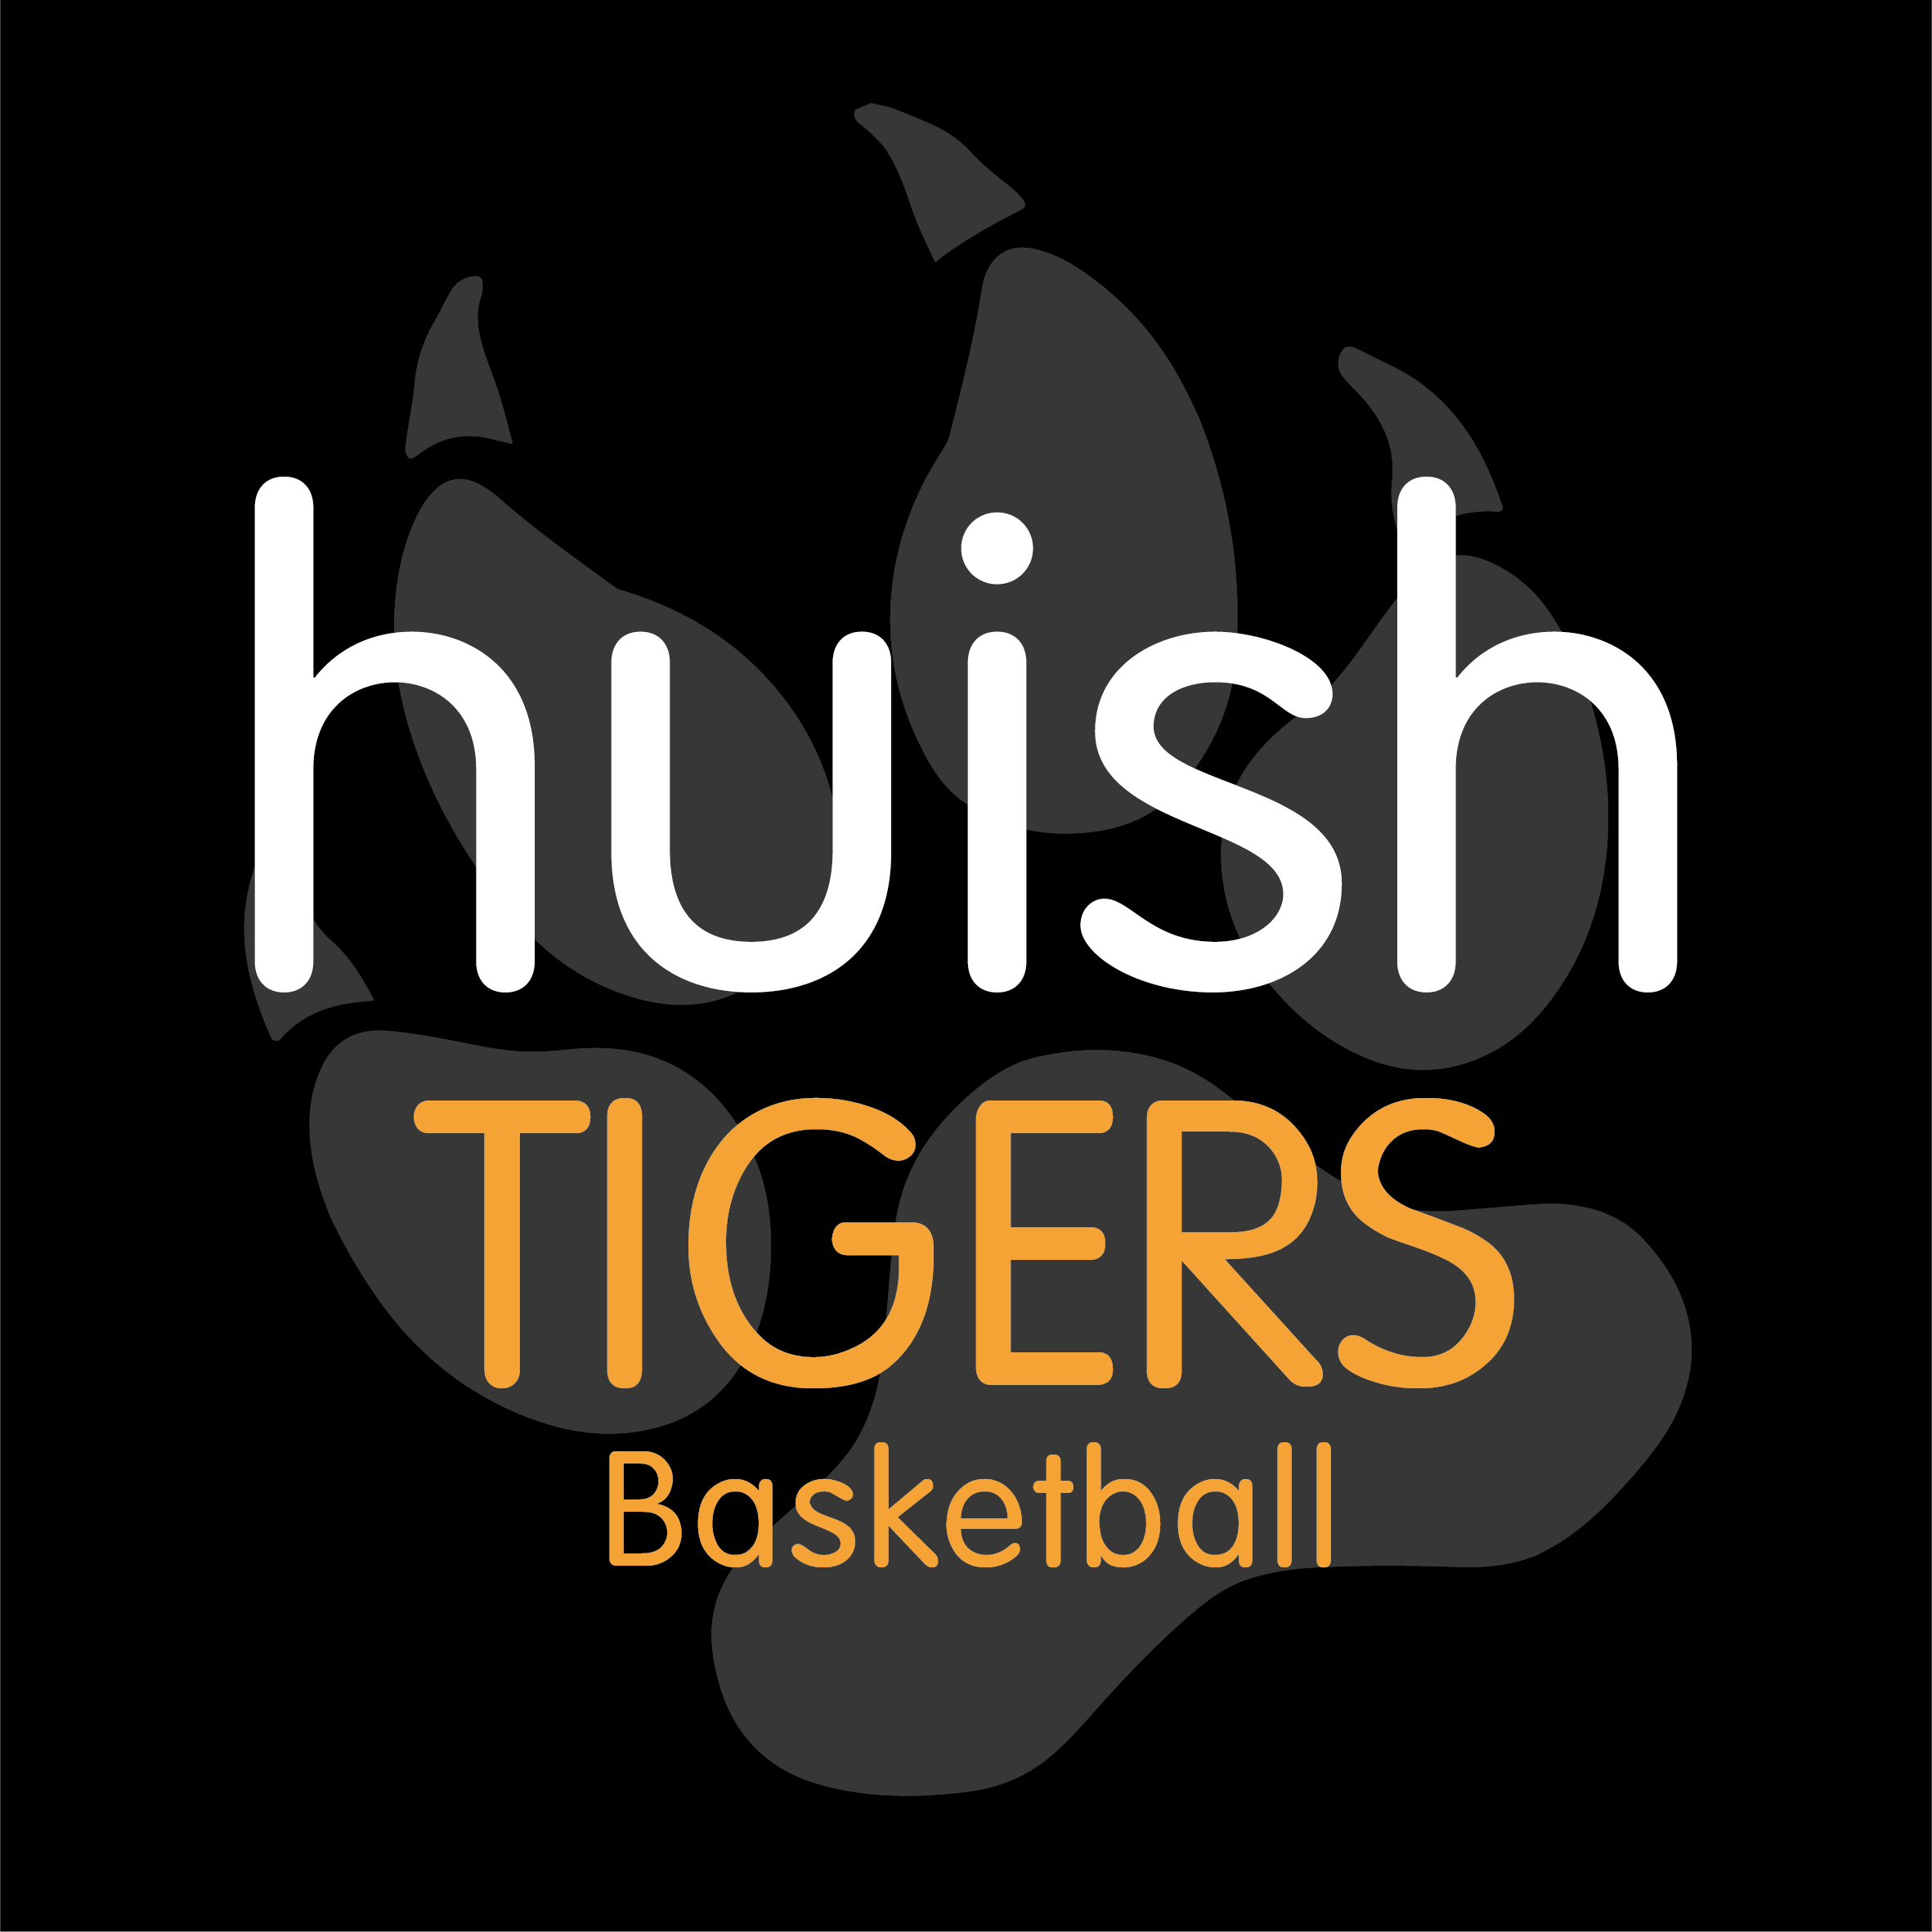 Huish Tigers Basketball - Deposit 2022-23